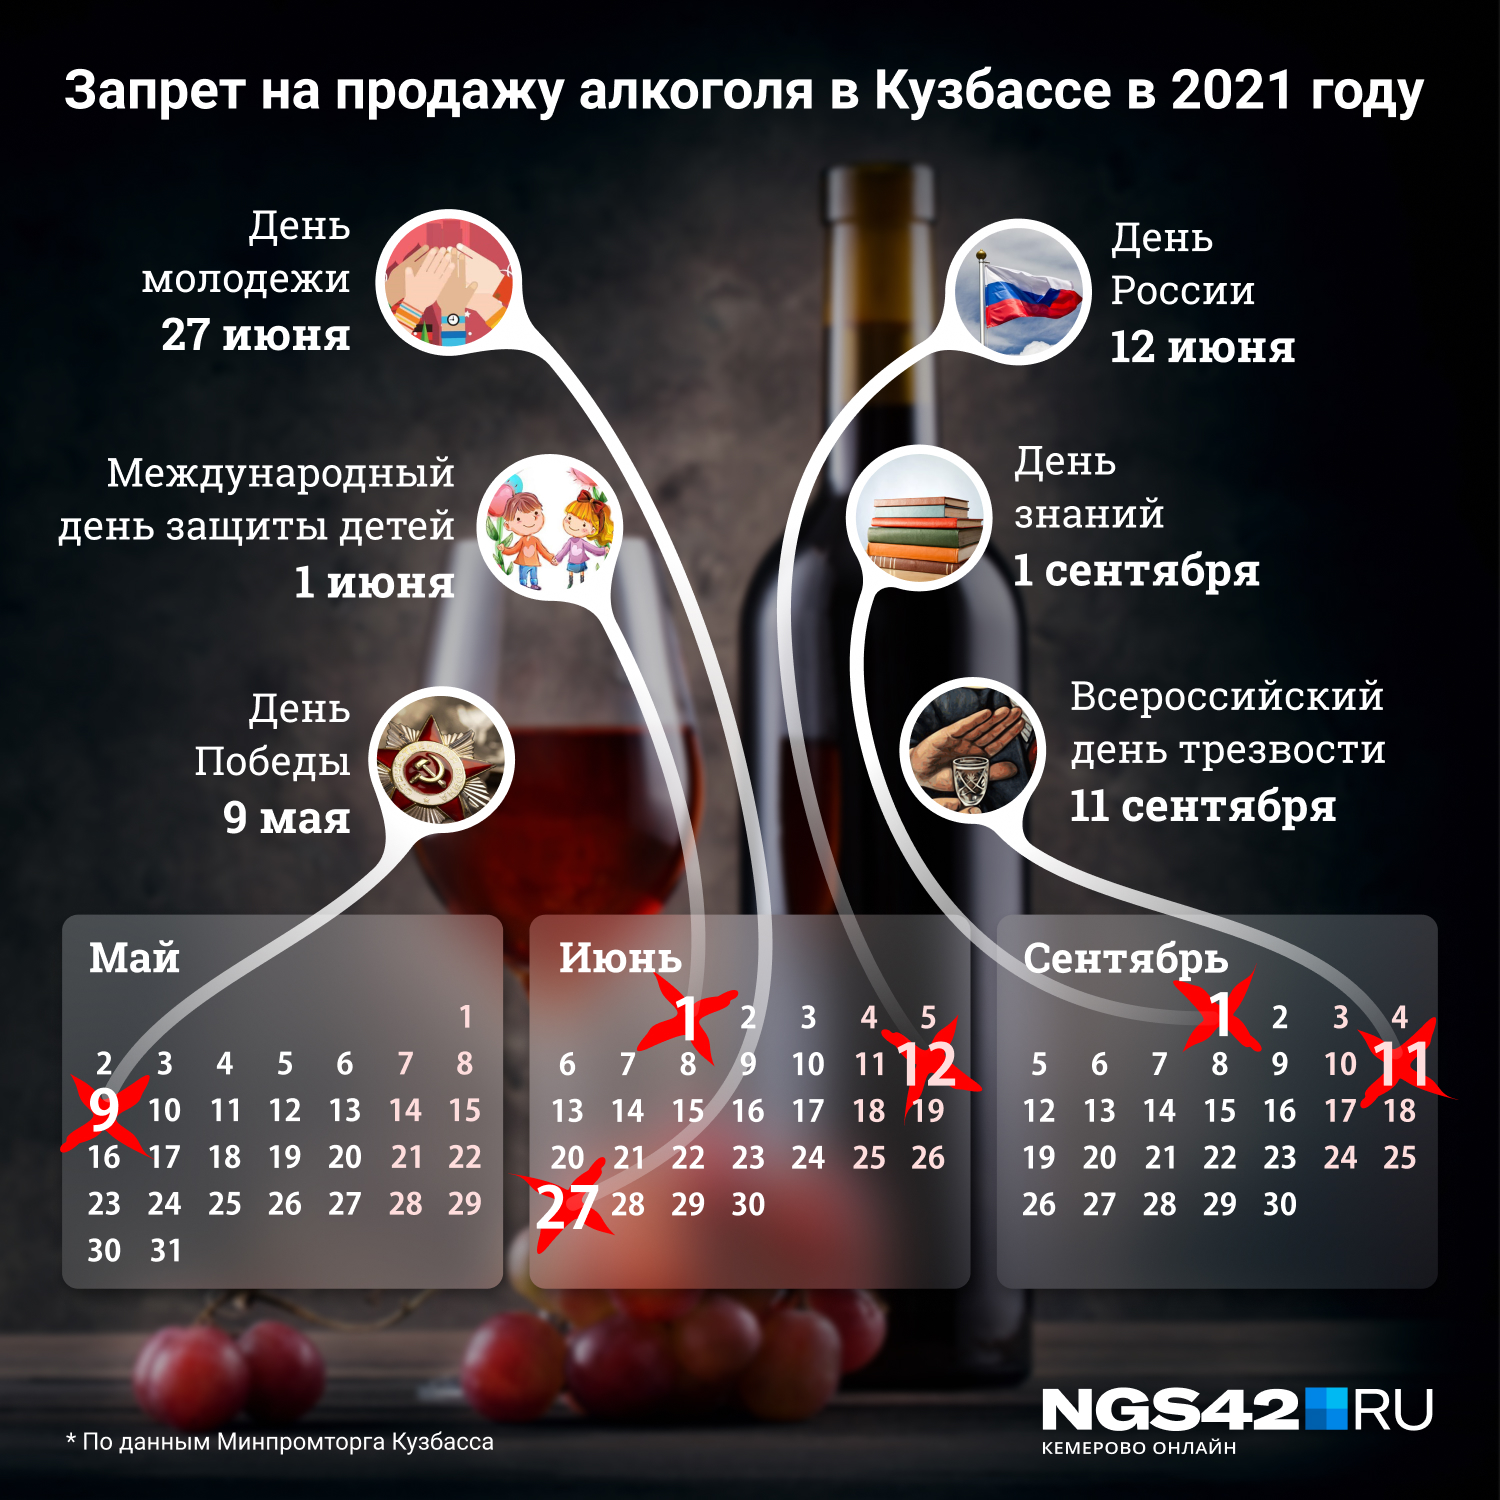 Даты, когда в Кузбассе запрещена продажа алкоголя <nobr class="_">в 2021 году</nobr>